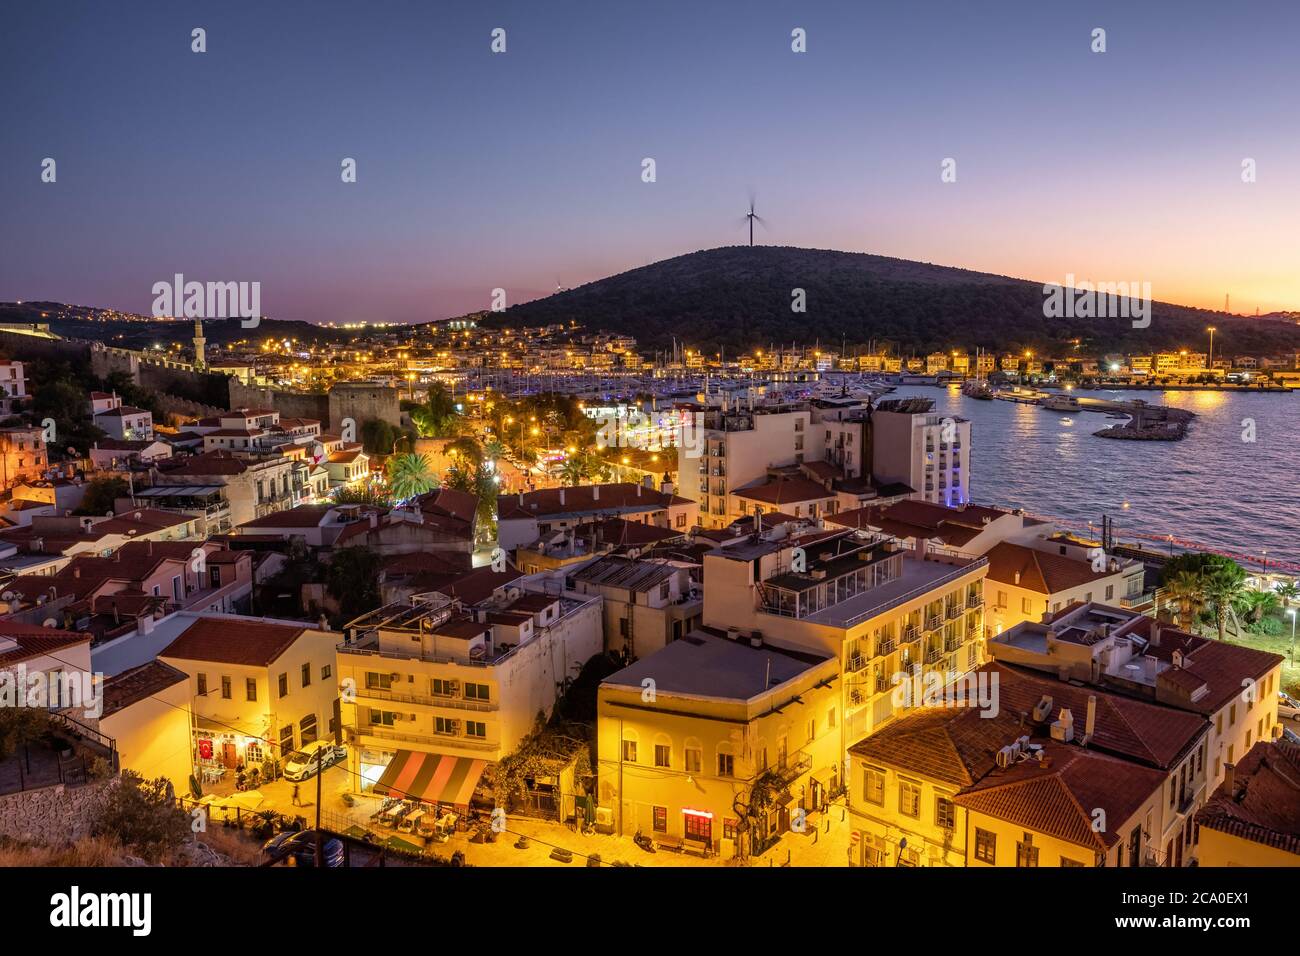 Cesme cityscape at Aegean sea coast, Turkey Stock Photo